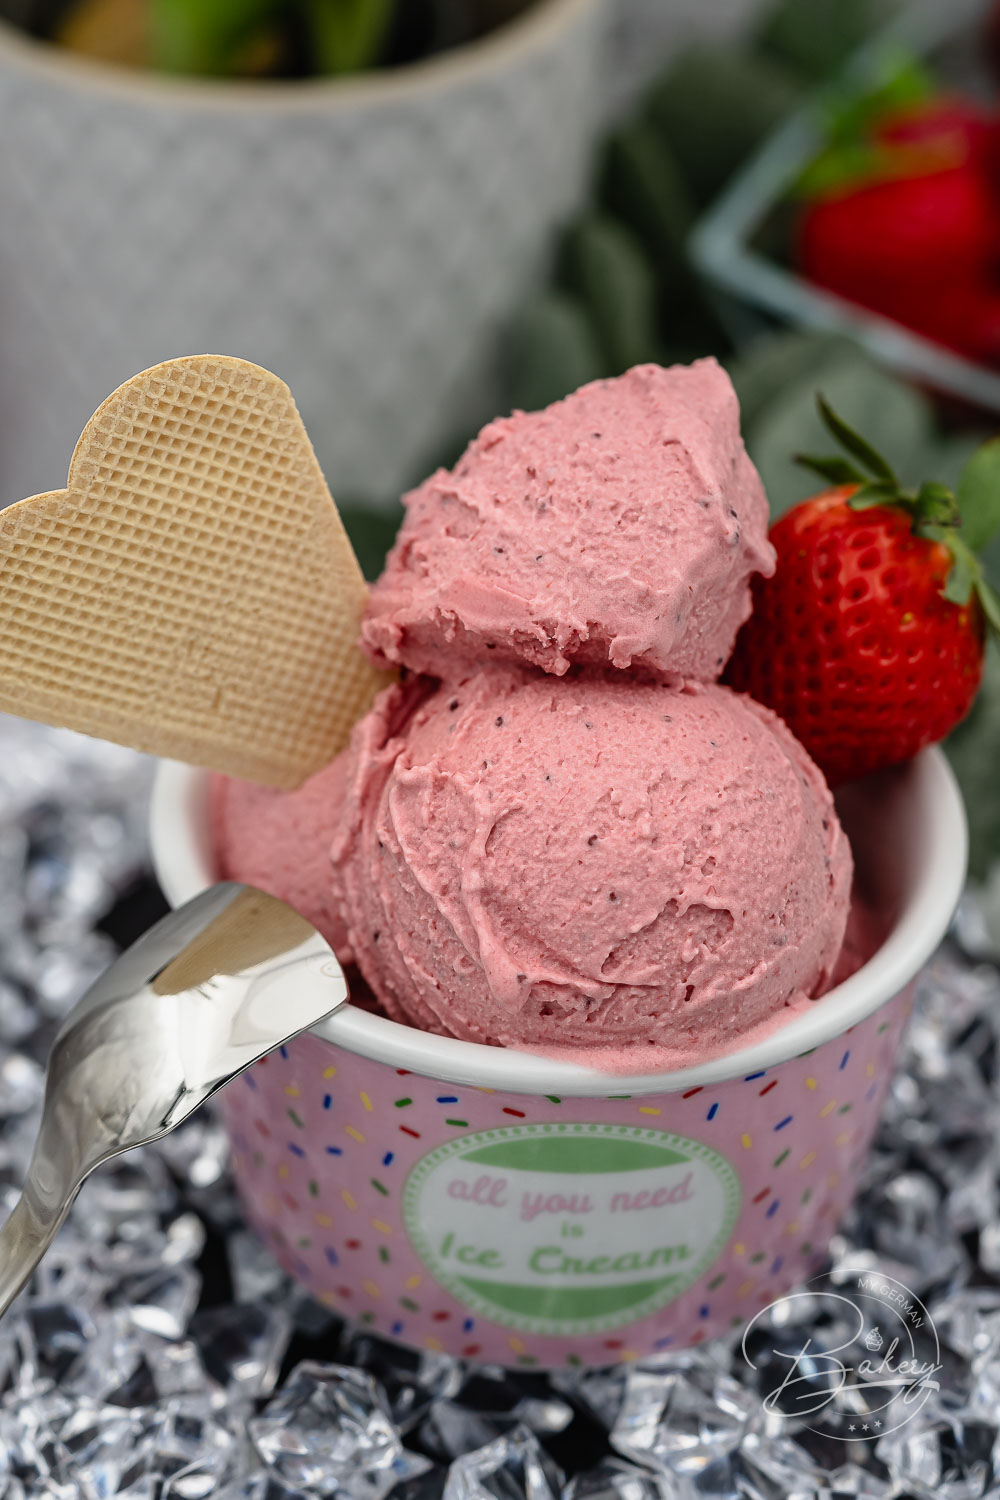 Schnelles und einfaches Erdbeer-Joghurt Eis Rezept für leckeres Speiseeis in wenigen Minuten. Cremiges Erdbeer-Eis als Frozen Yoghurt Variante